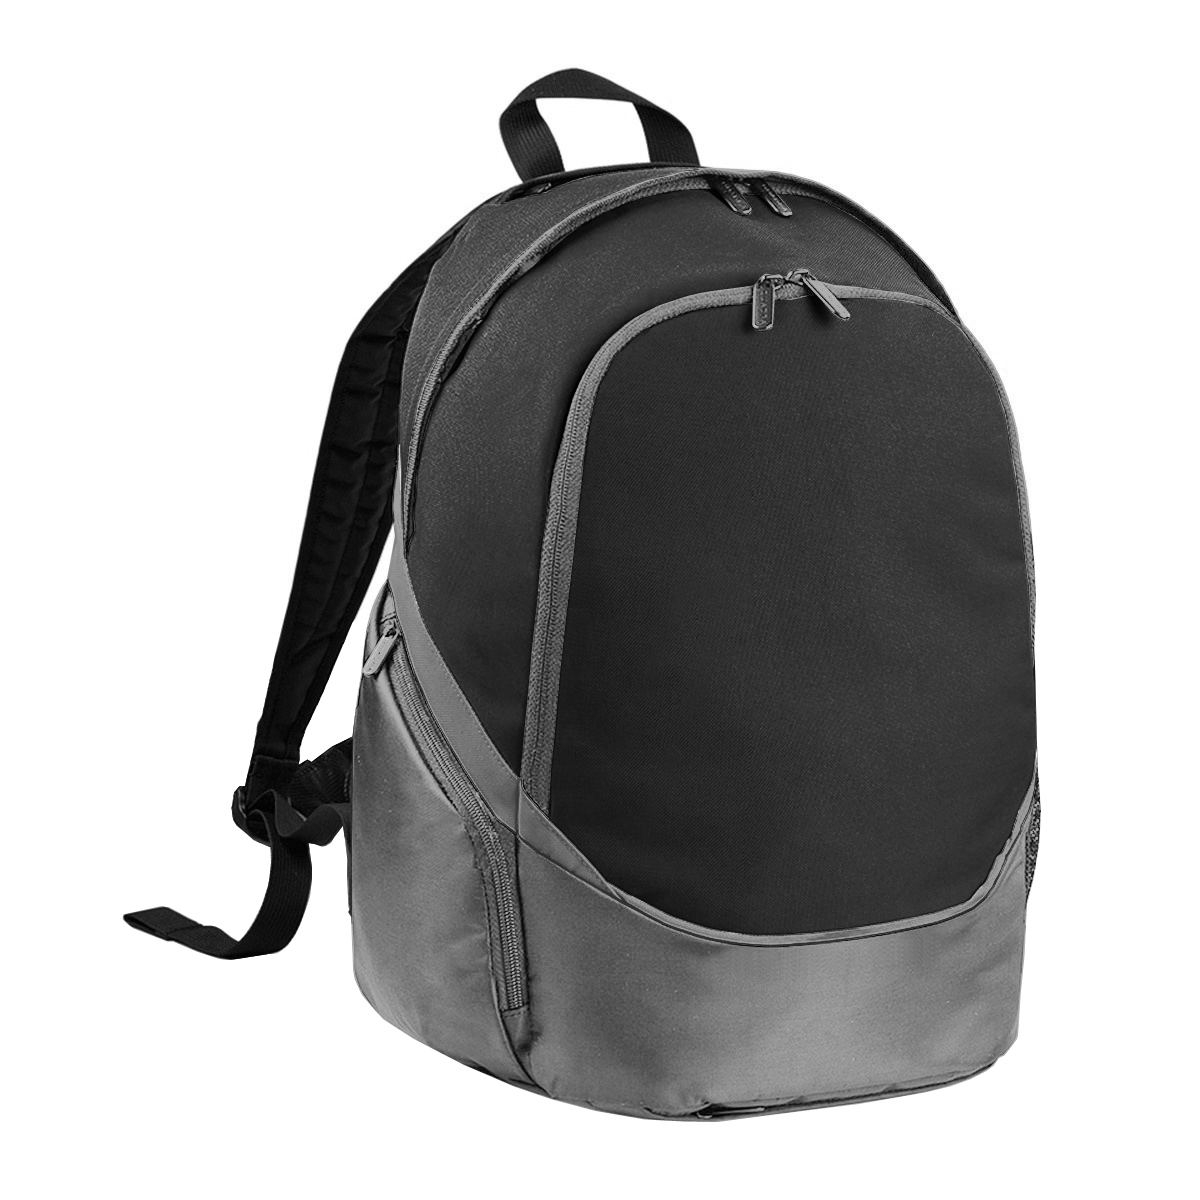 Mochila Pro Team Backpack / Saco De Mochila (17 Litros) Quadra - negro - 